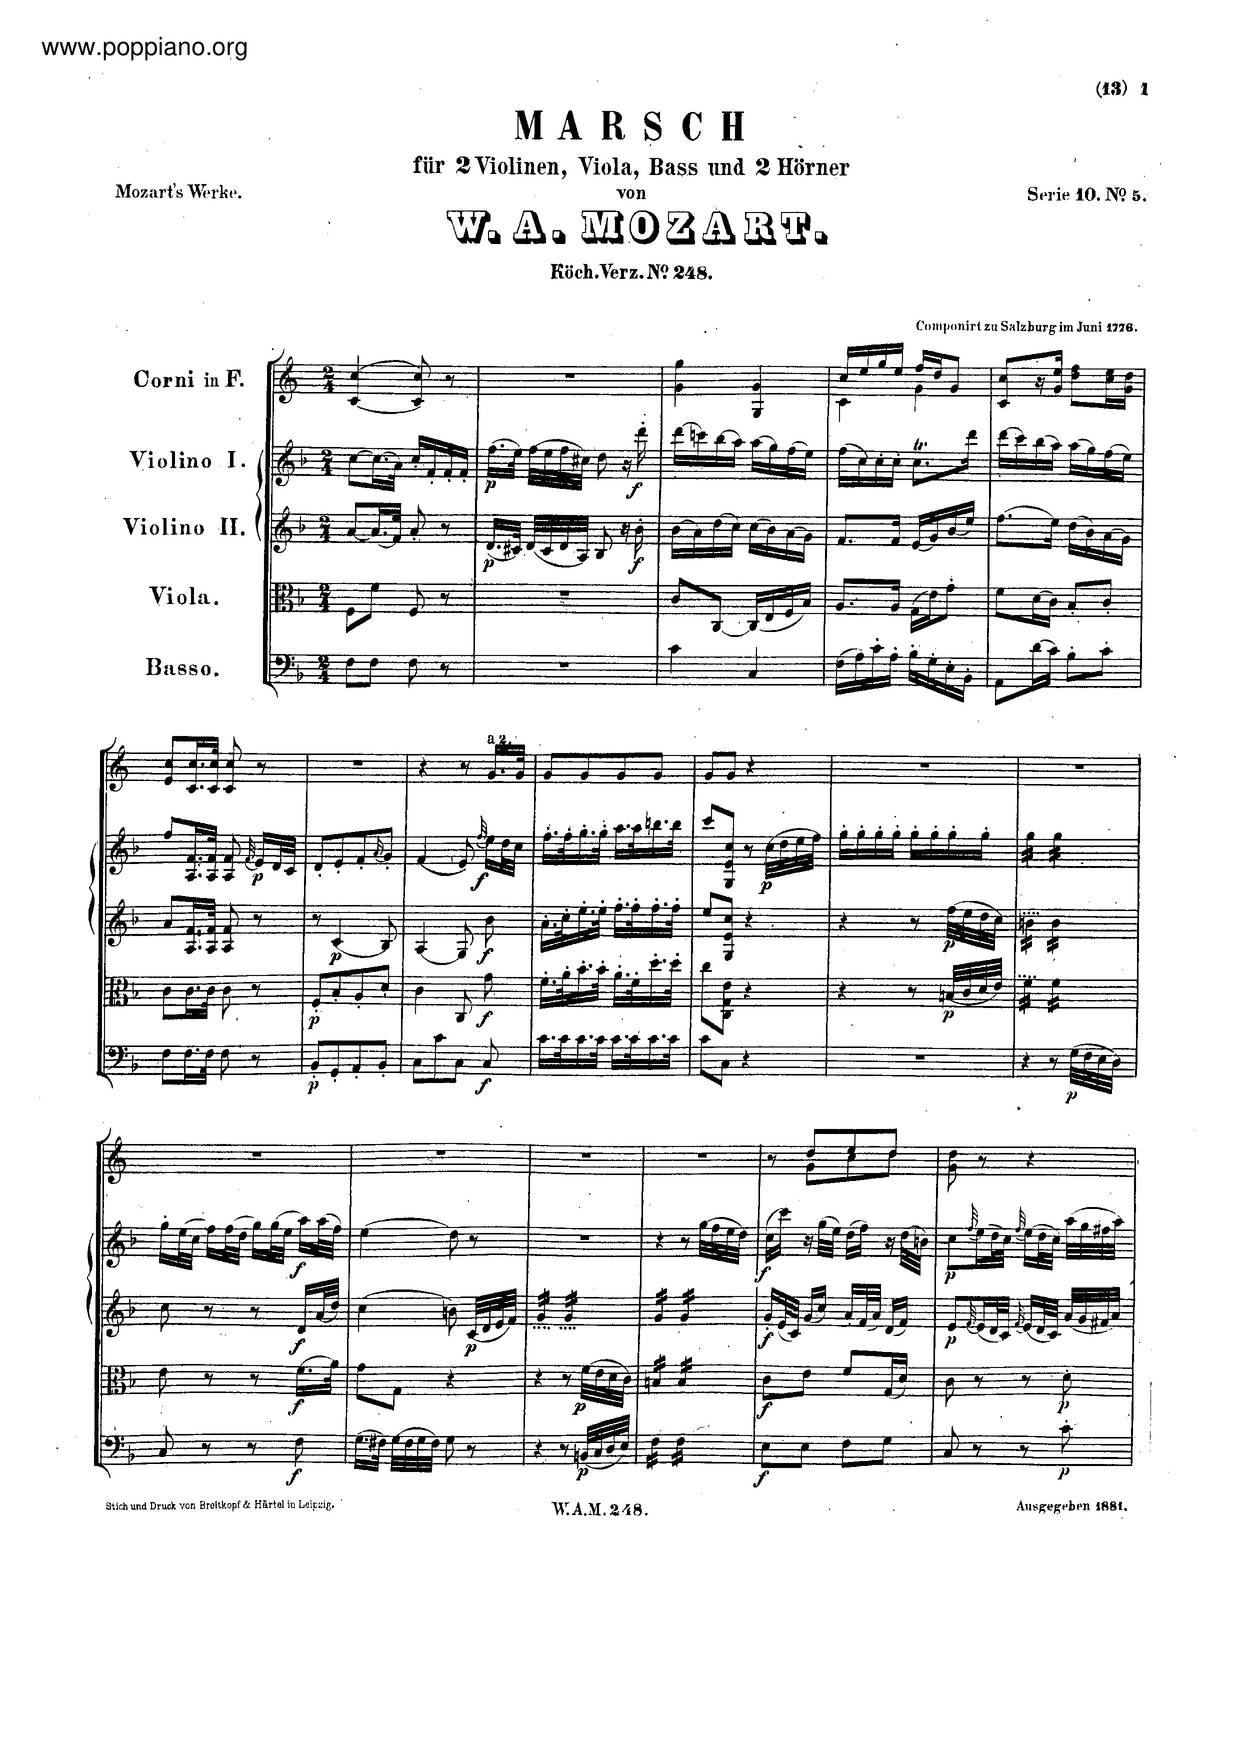 March In F Major, K. 248 Score